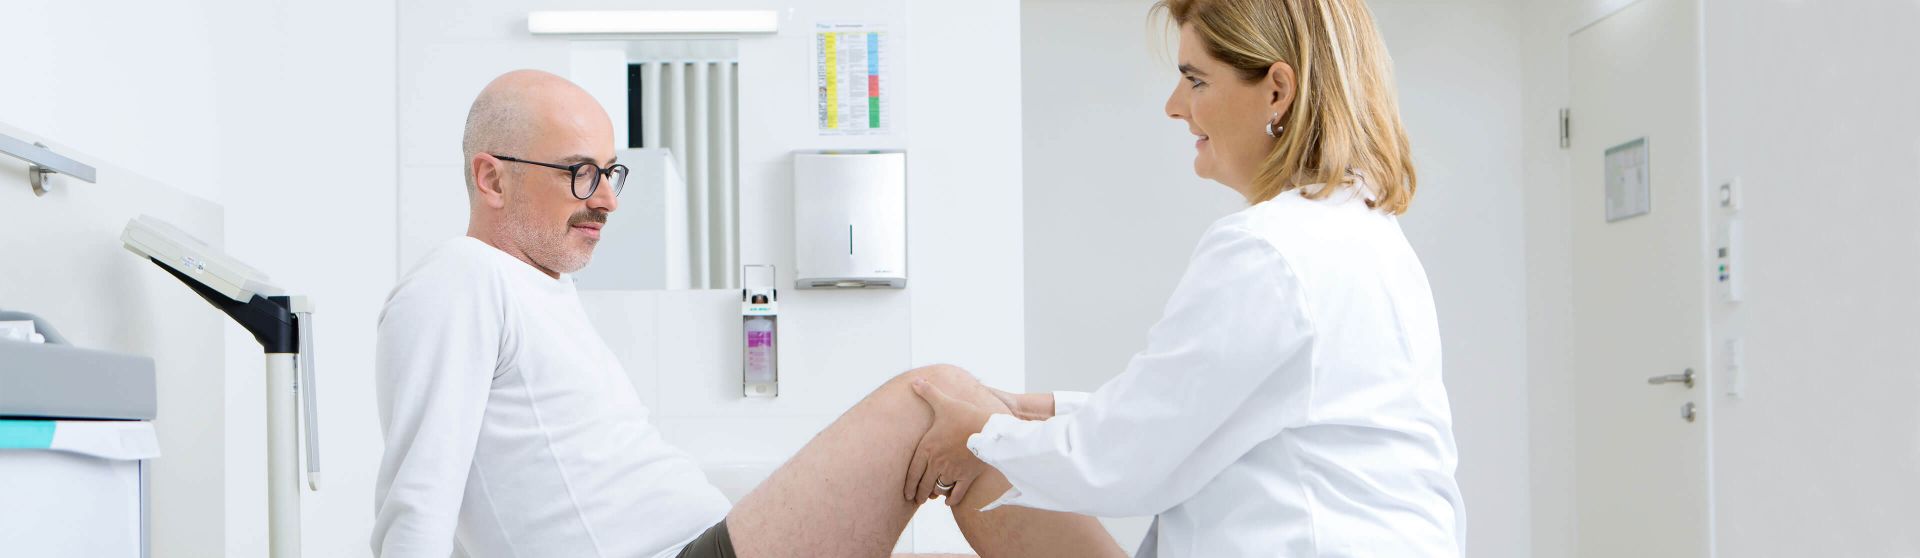 Orthopädin untersucht das Knie eines Patienten in ihrer Ordination.